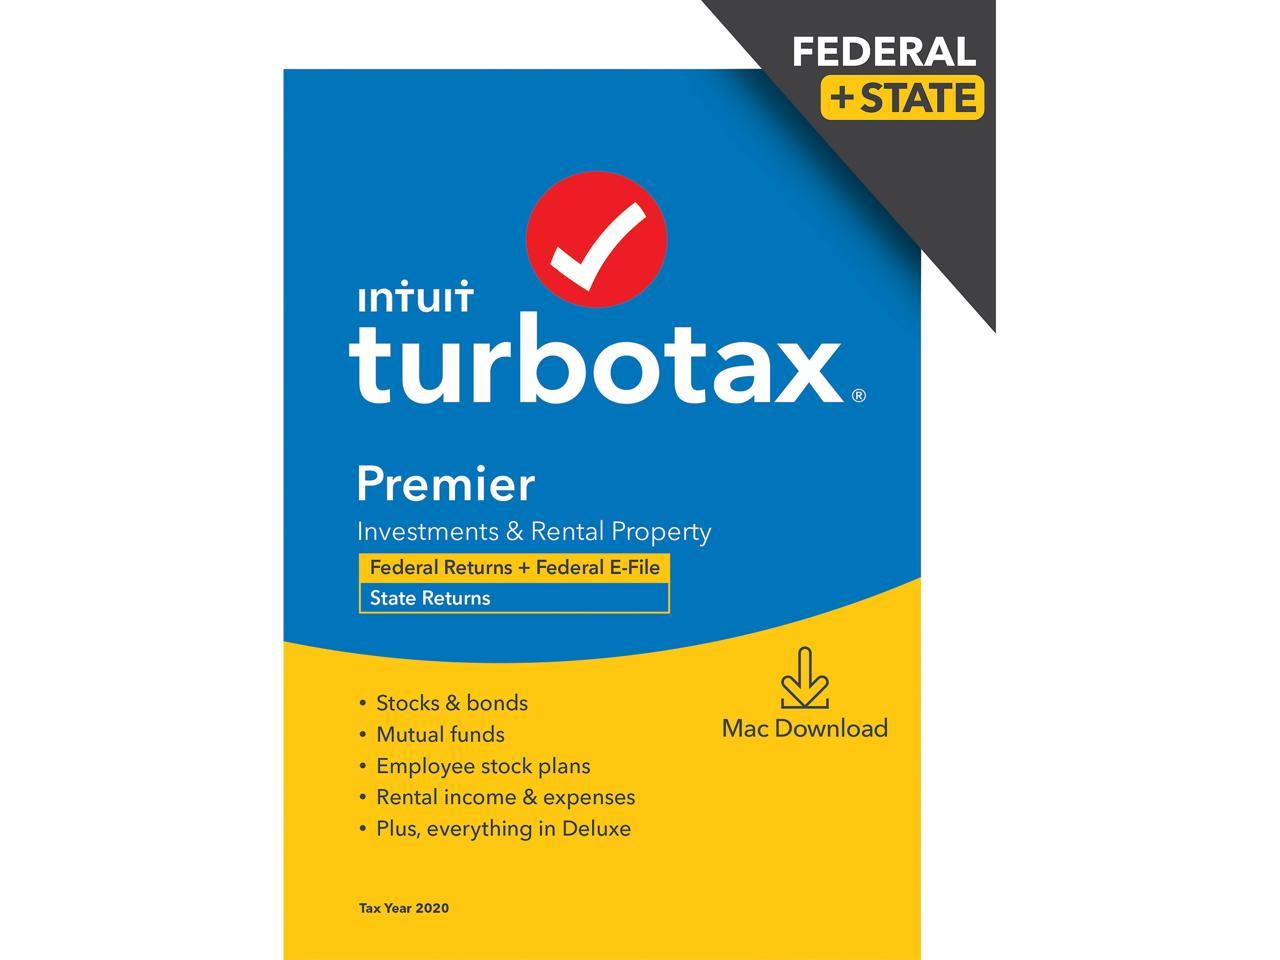 turbotax coupon code 2021